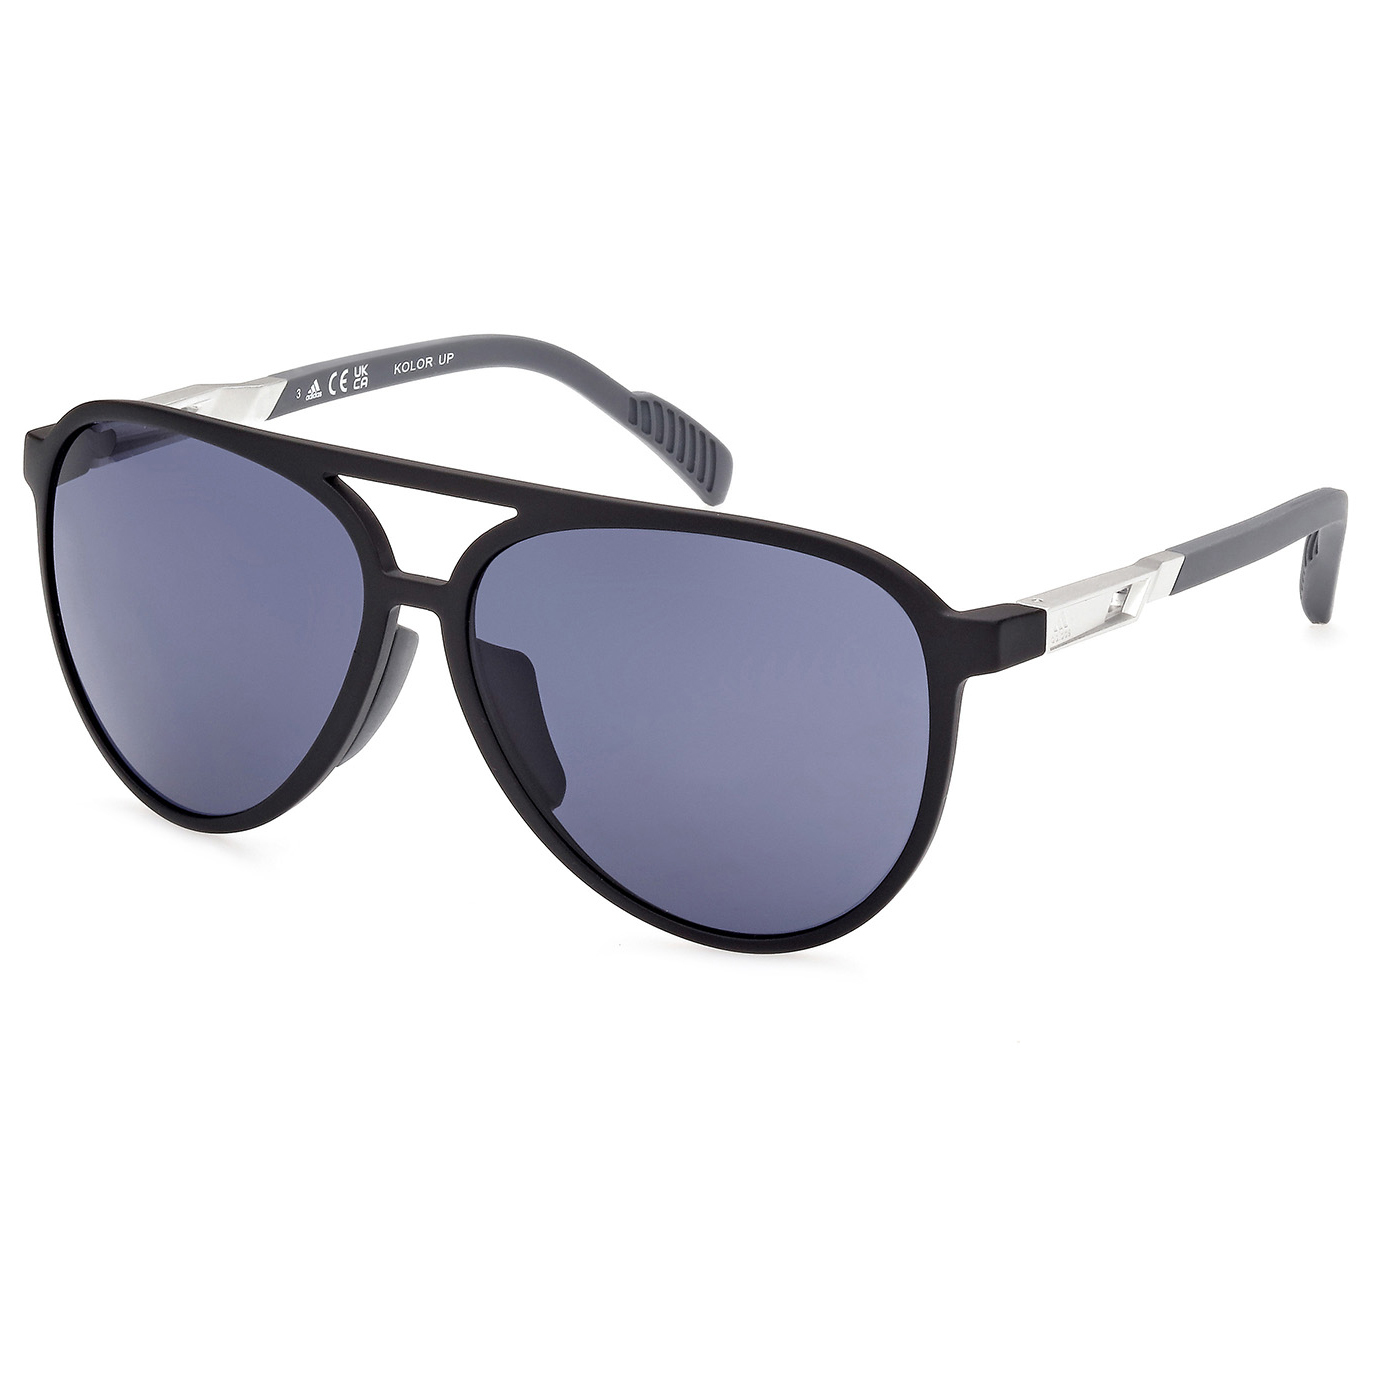 Солнцезащитные очки Adidas SP0060 Cat 3, матовый черный